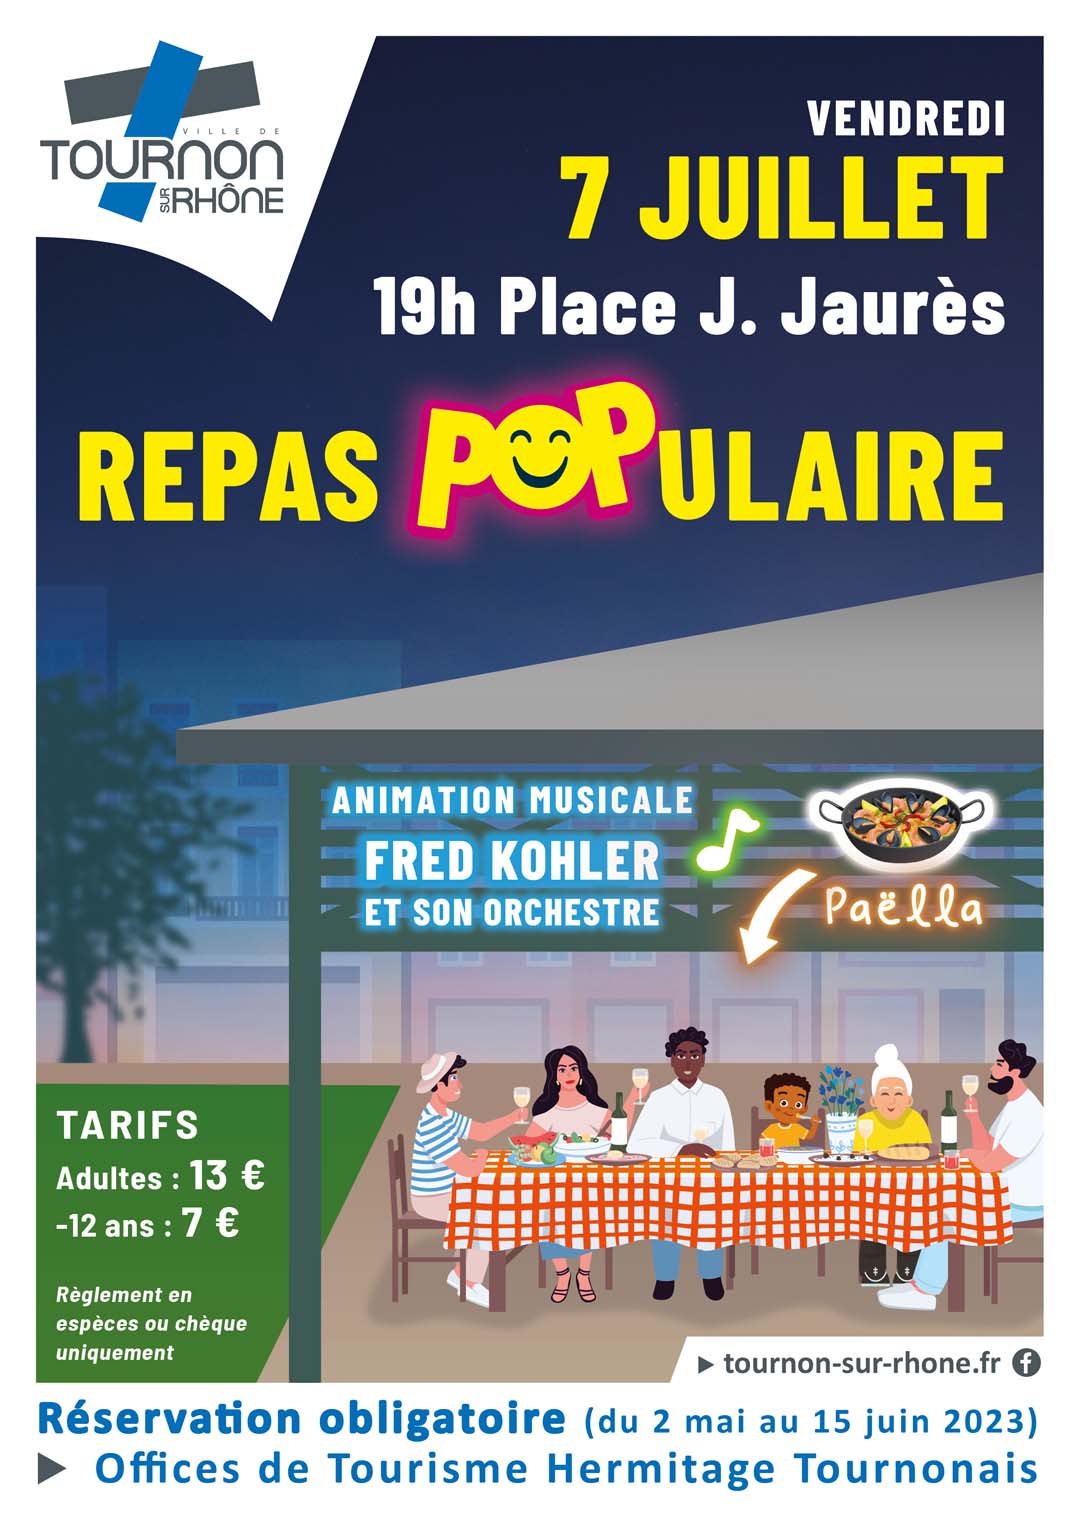 REPAS POPULAIRE. Vendredi 7 juillet 2023 - 19h Place Jean Jaurès. Réservation obligatoire auprès des Offices de Tourismes Hermitage Tournonais. 